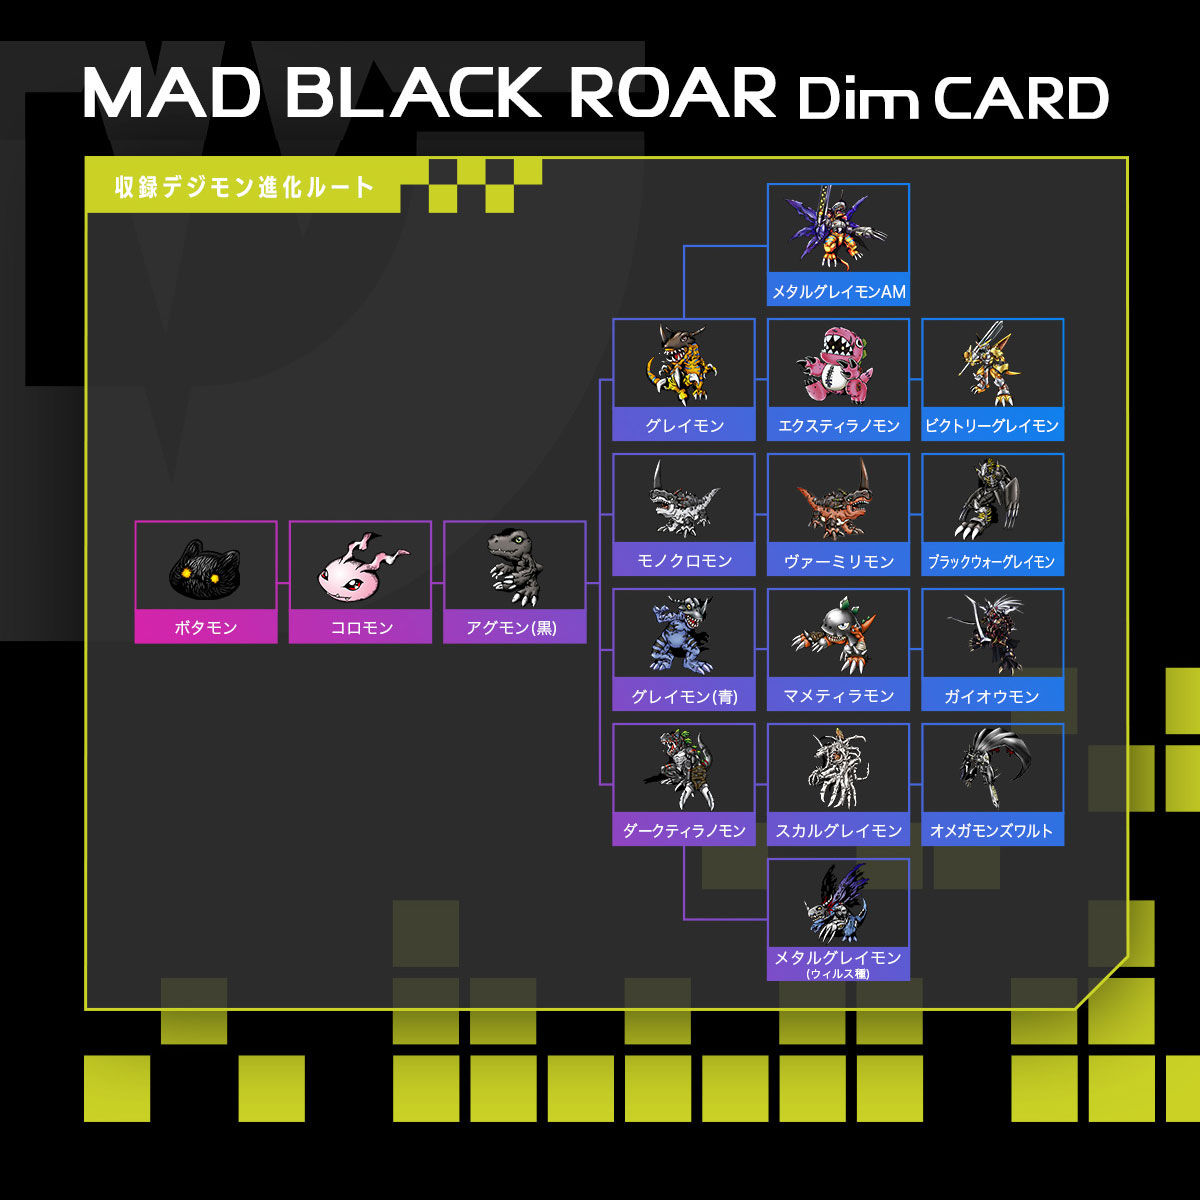 バイタルブレスデジタルモンスター　Dimカードセットvol.0.5 MAD BLACK ROAR&TRUE SHADOW HOWL| プレミアムバンダイ